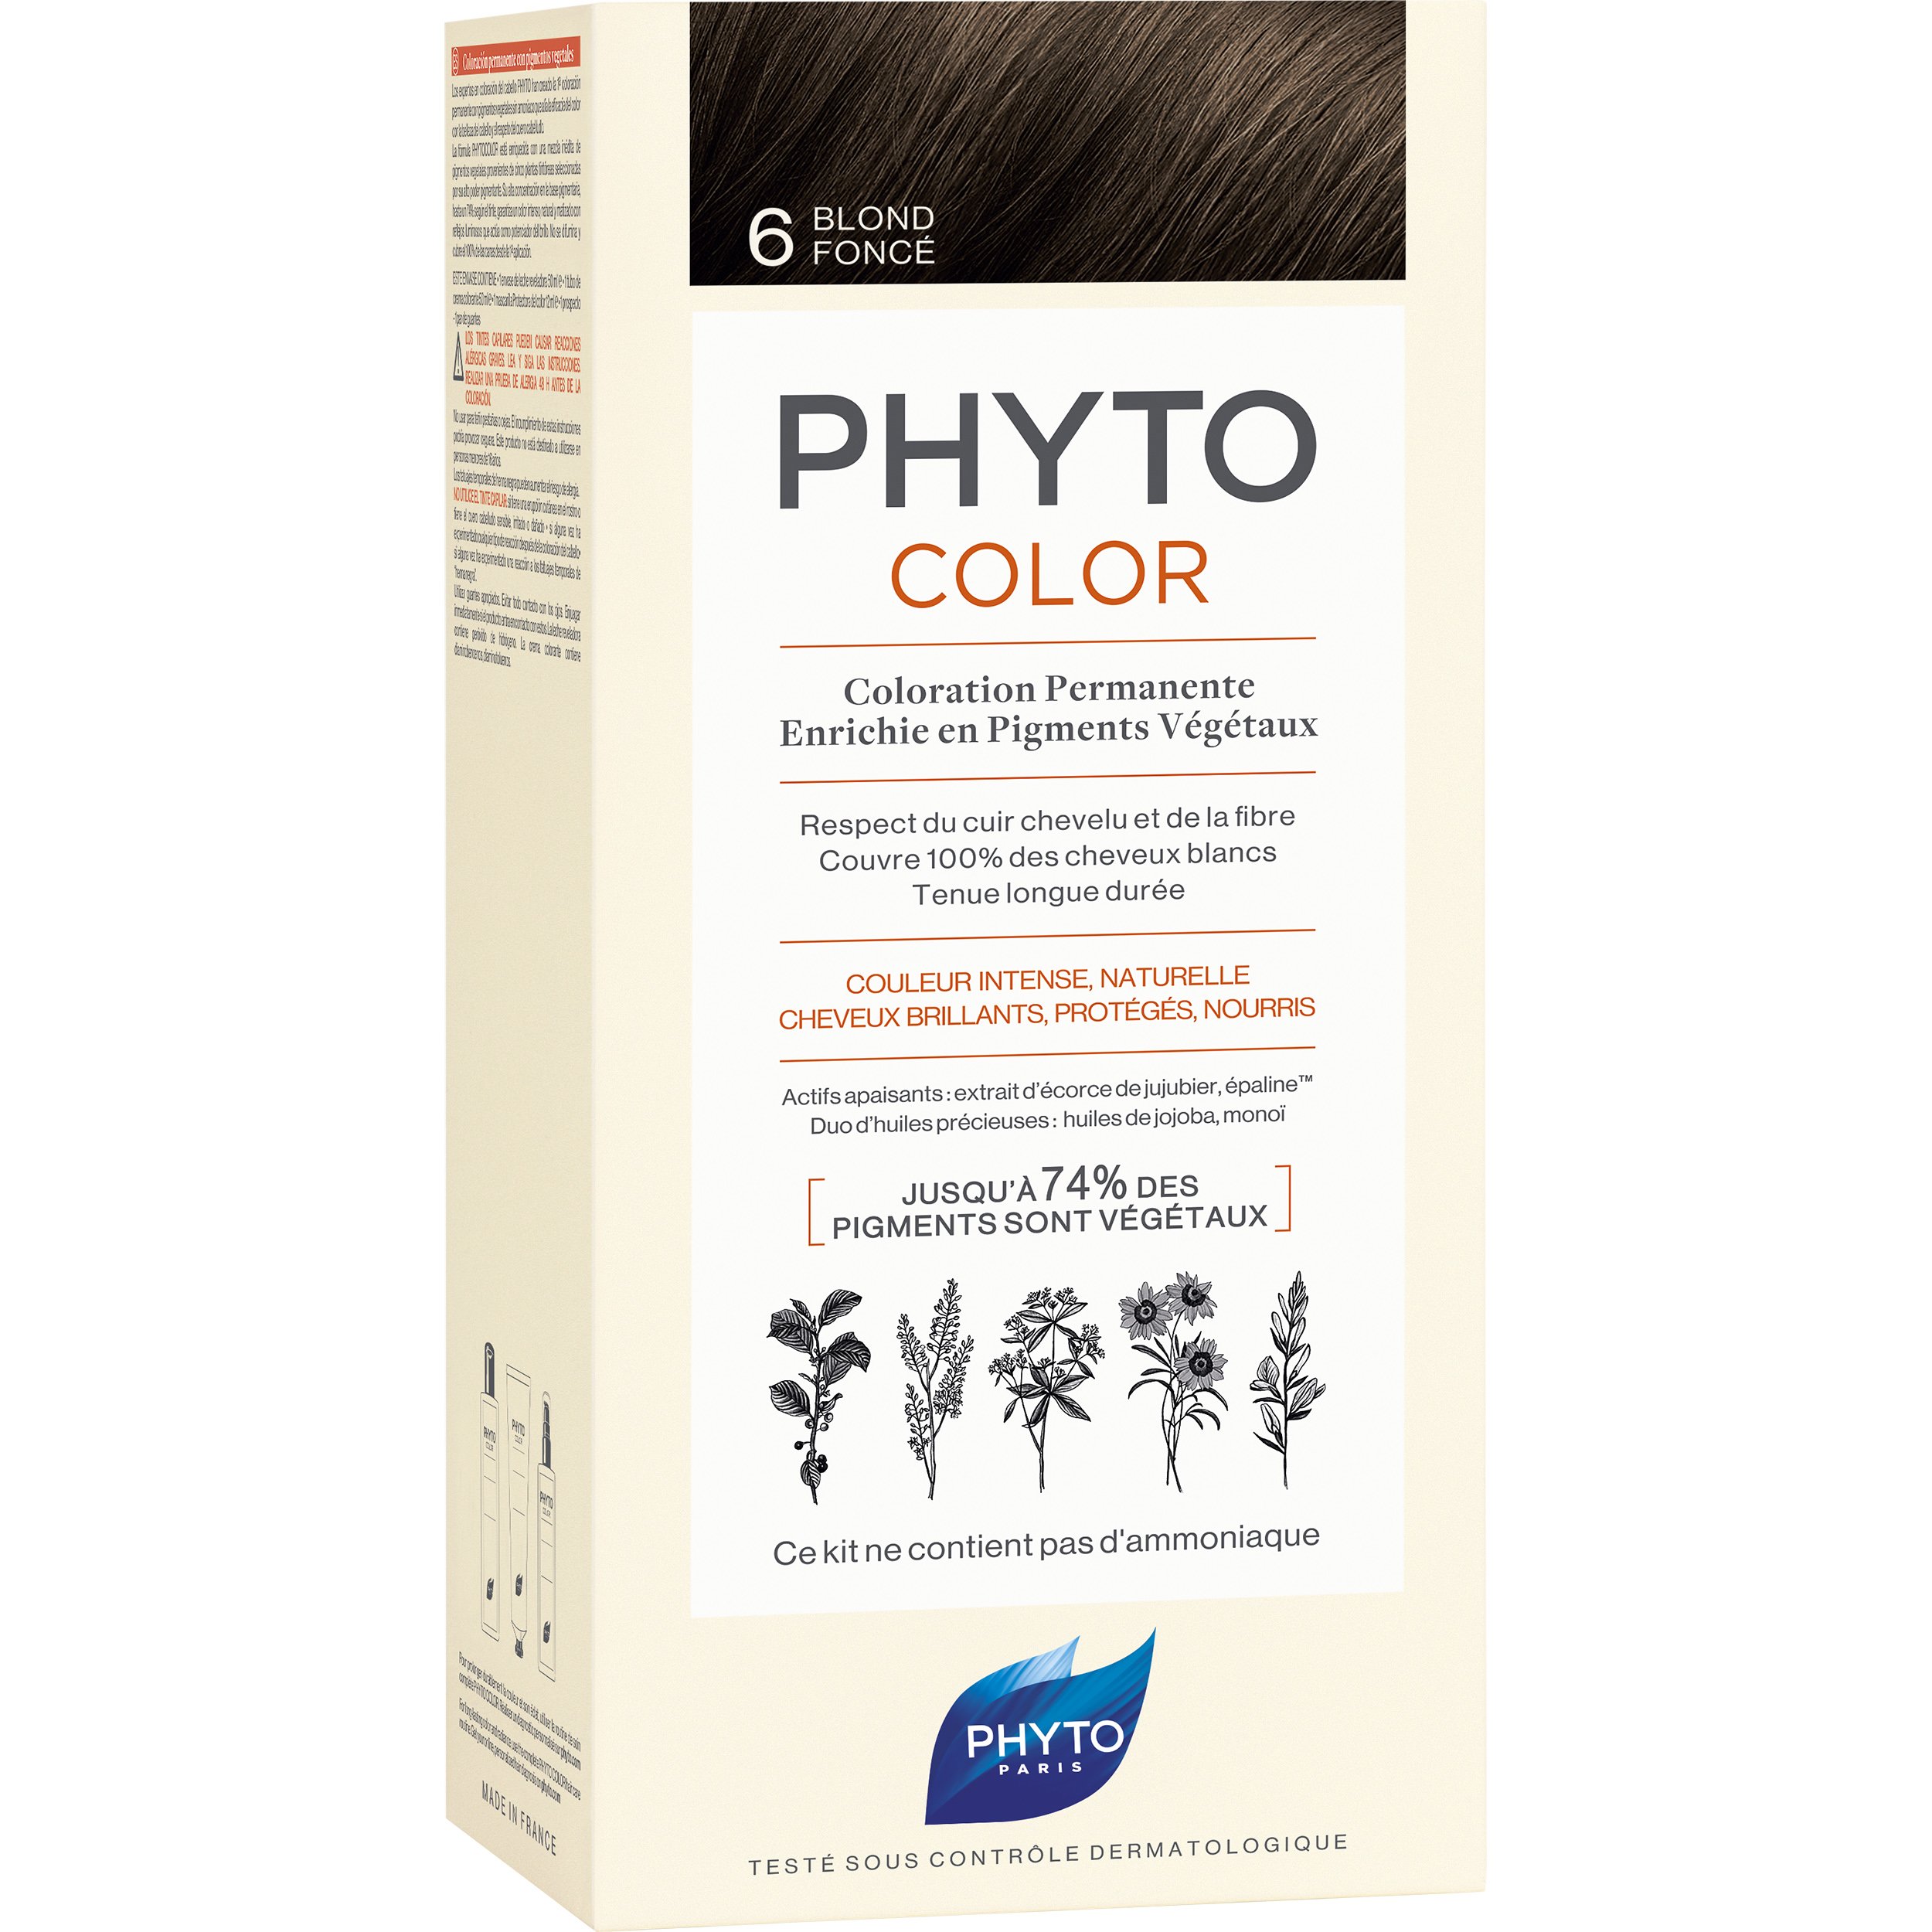 Phyto PhytoColor Coloration Permanente η No1 Μόνιμη Βαφή Μαλλιών Χωρίς Χρωστικές Ουσίες & Αμμωνία – 6 Ξανθό Σκούρο